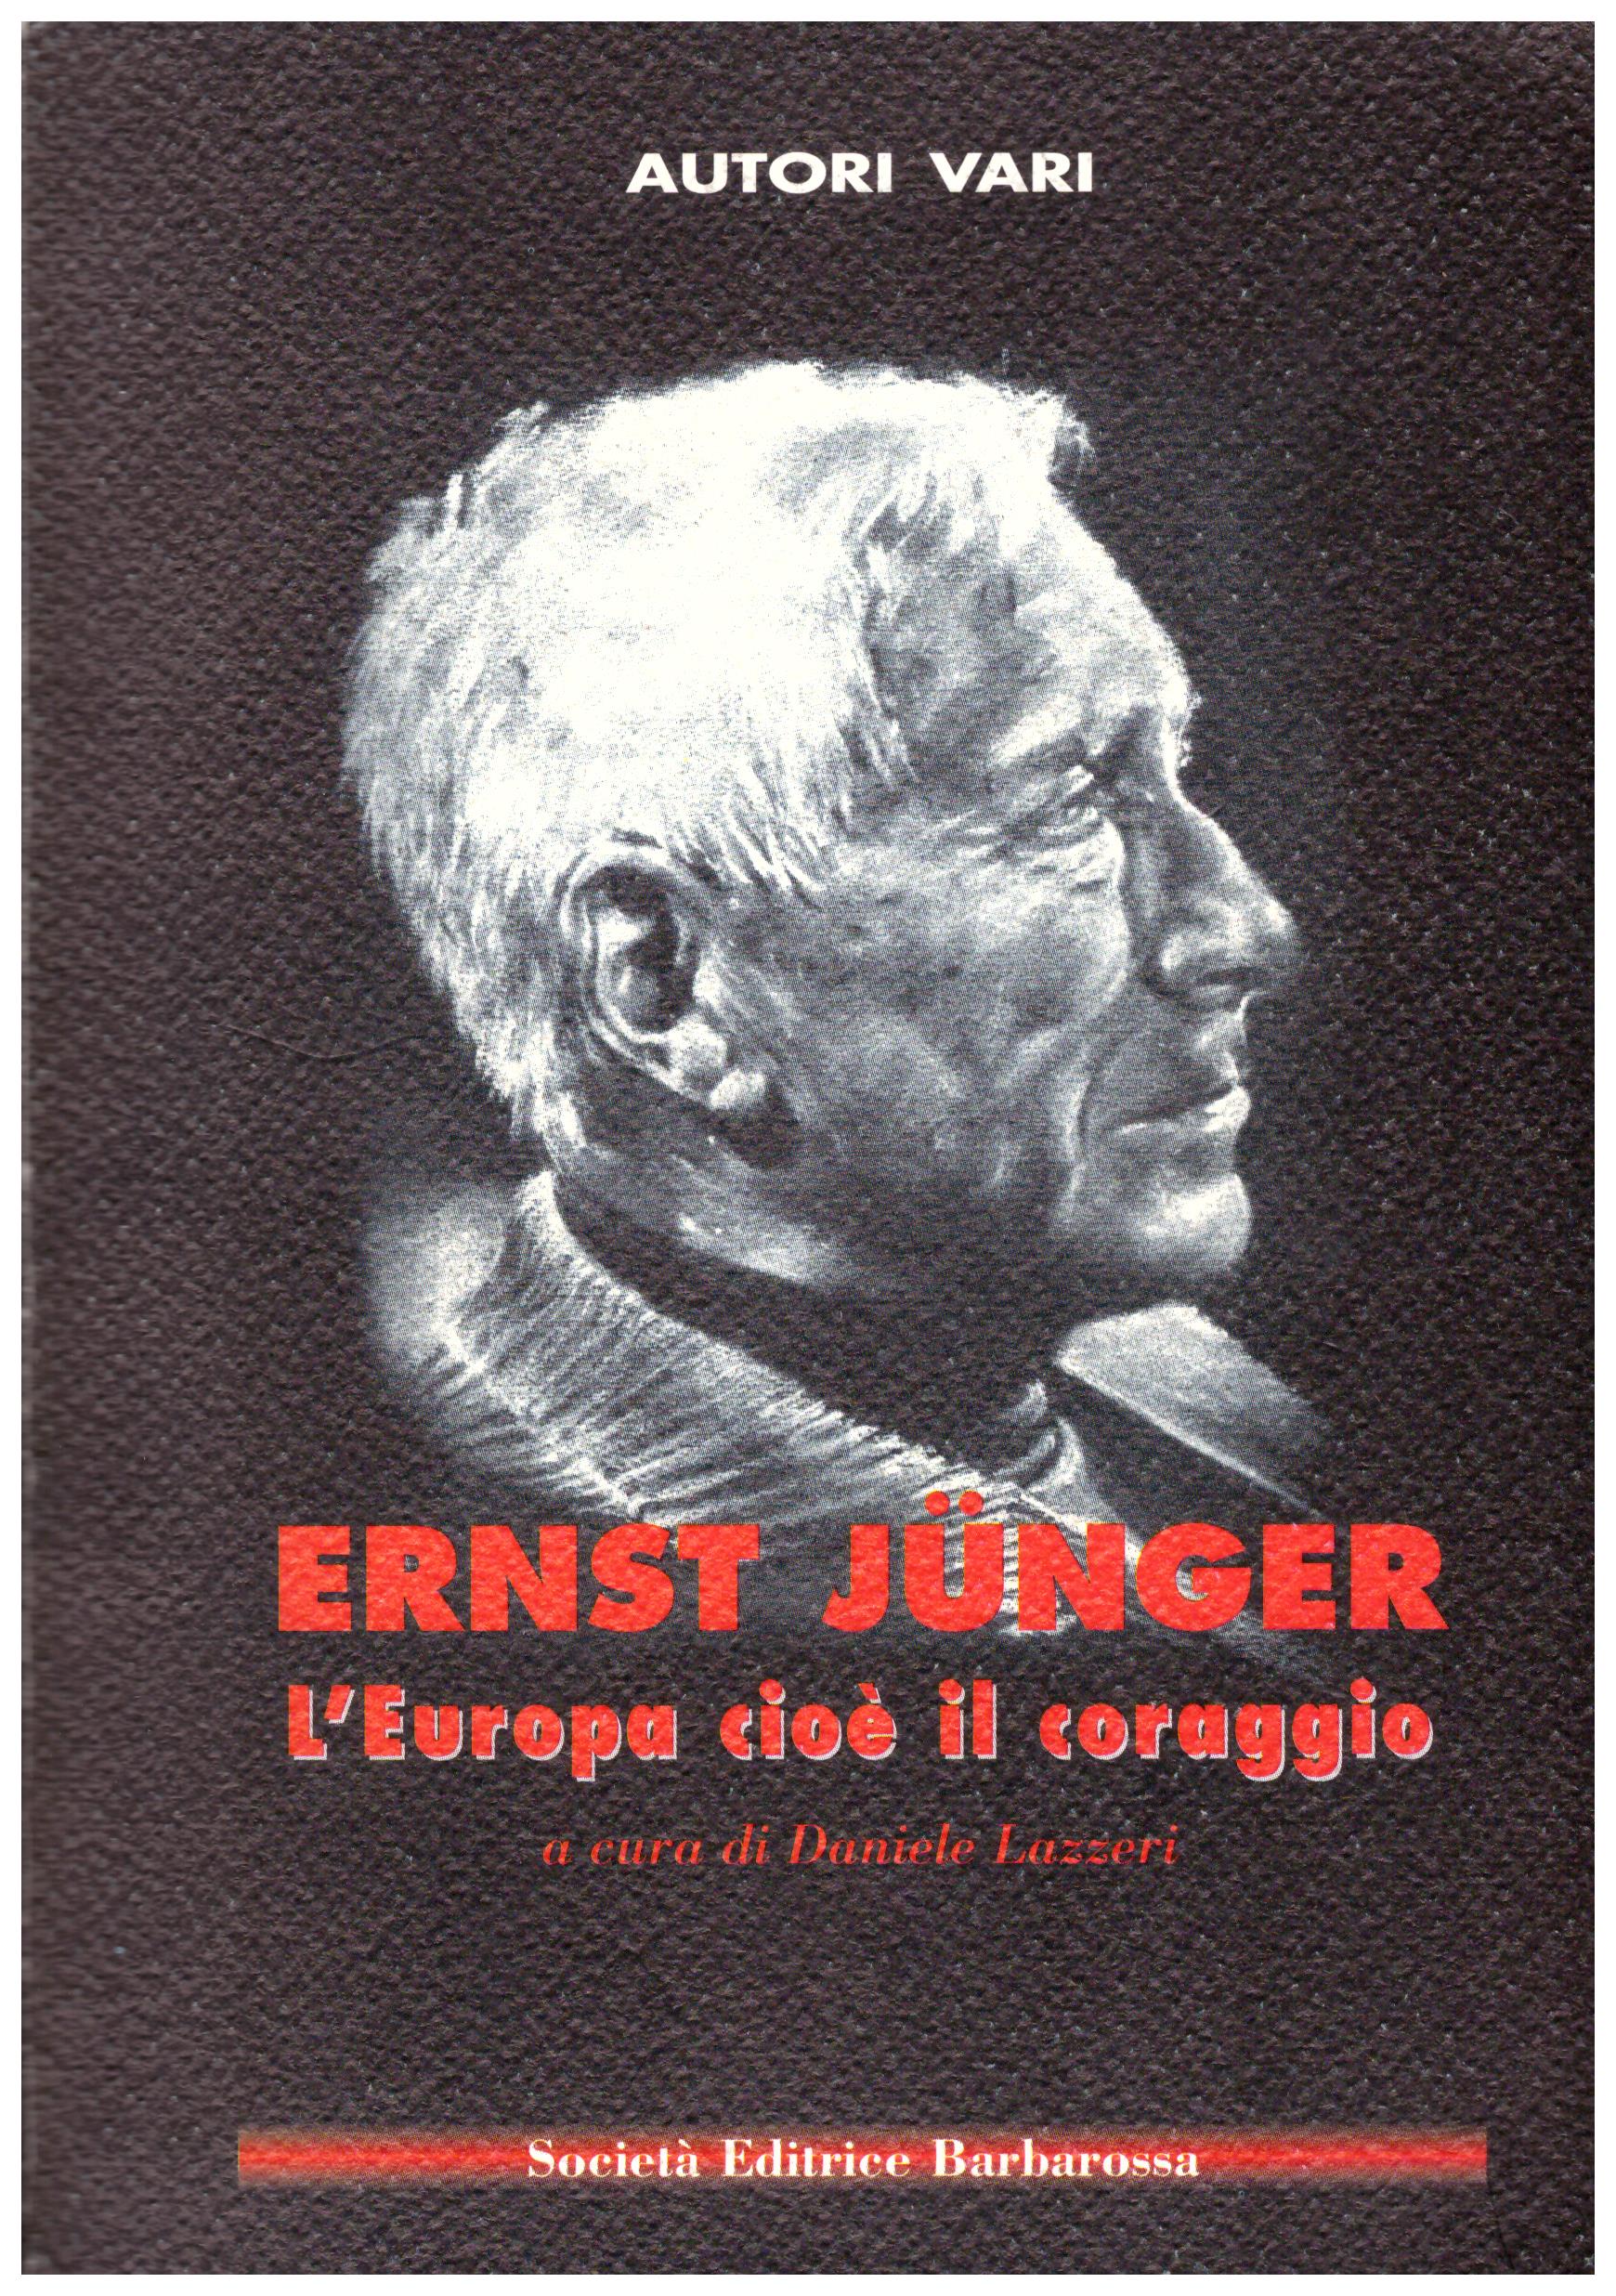 Ernest Junger. L'europa cioè il coraggio.